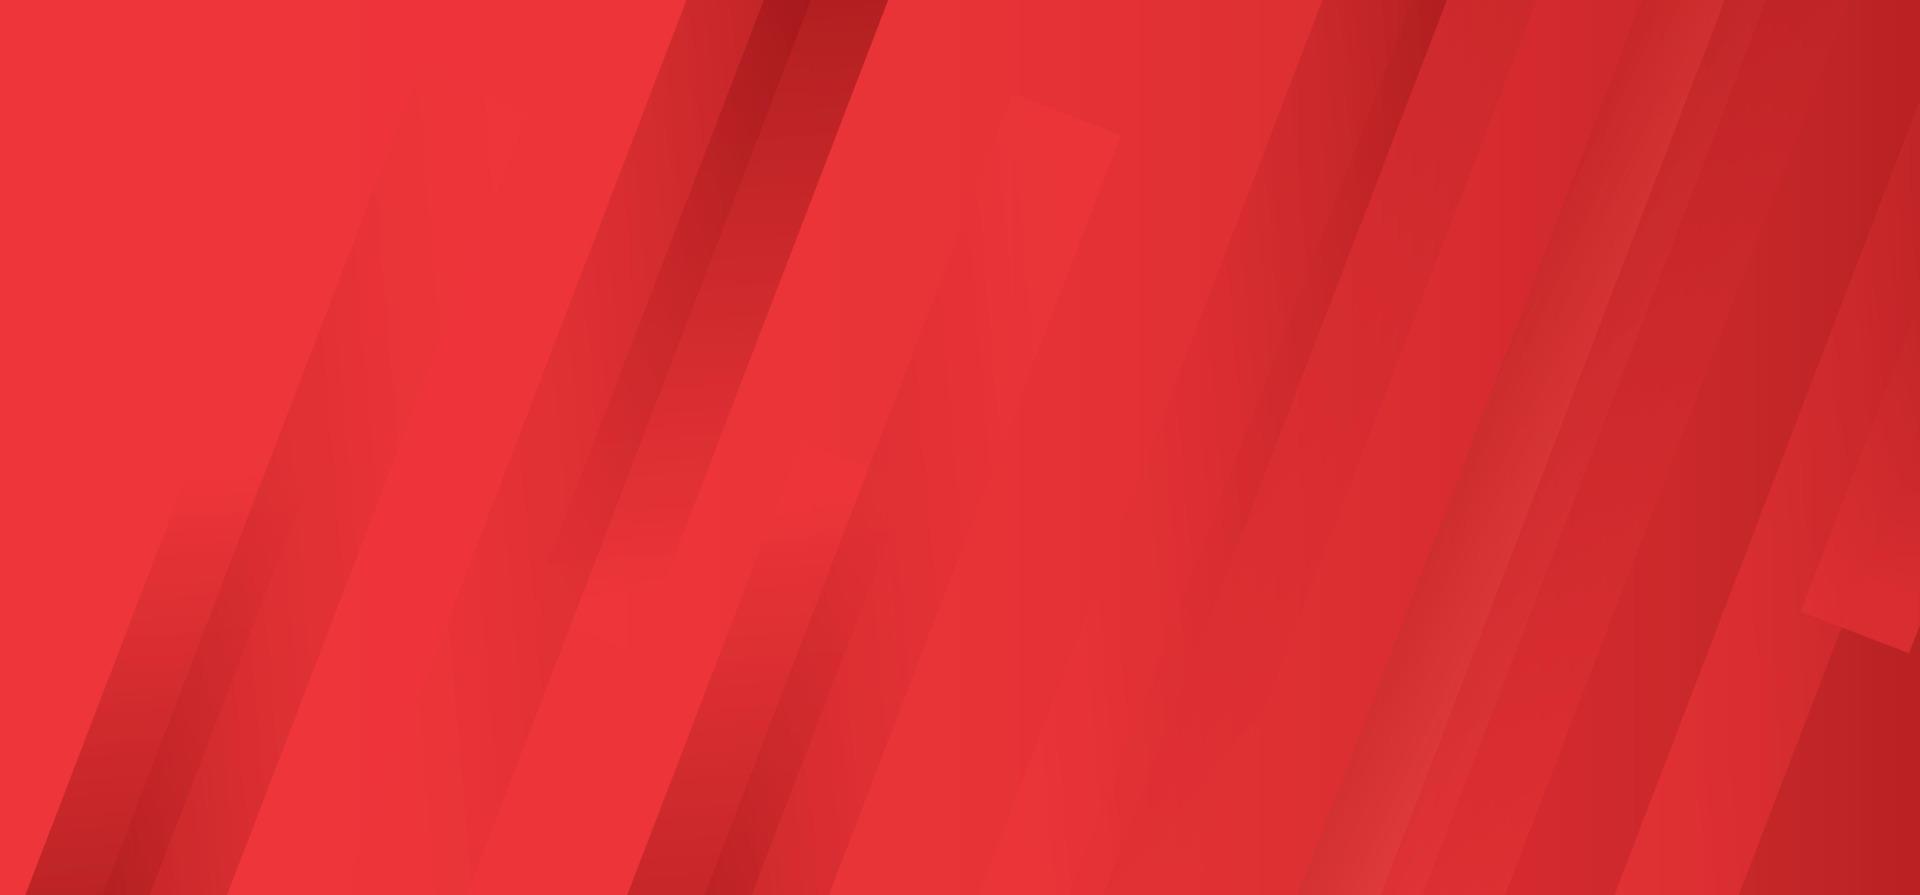 modèle abstrait de vecteur minimaliste moderne rouge pour la conception de fond d'affaires. illustration vectorielle de luxe avec des rayures pour les entreprises.